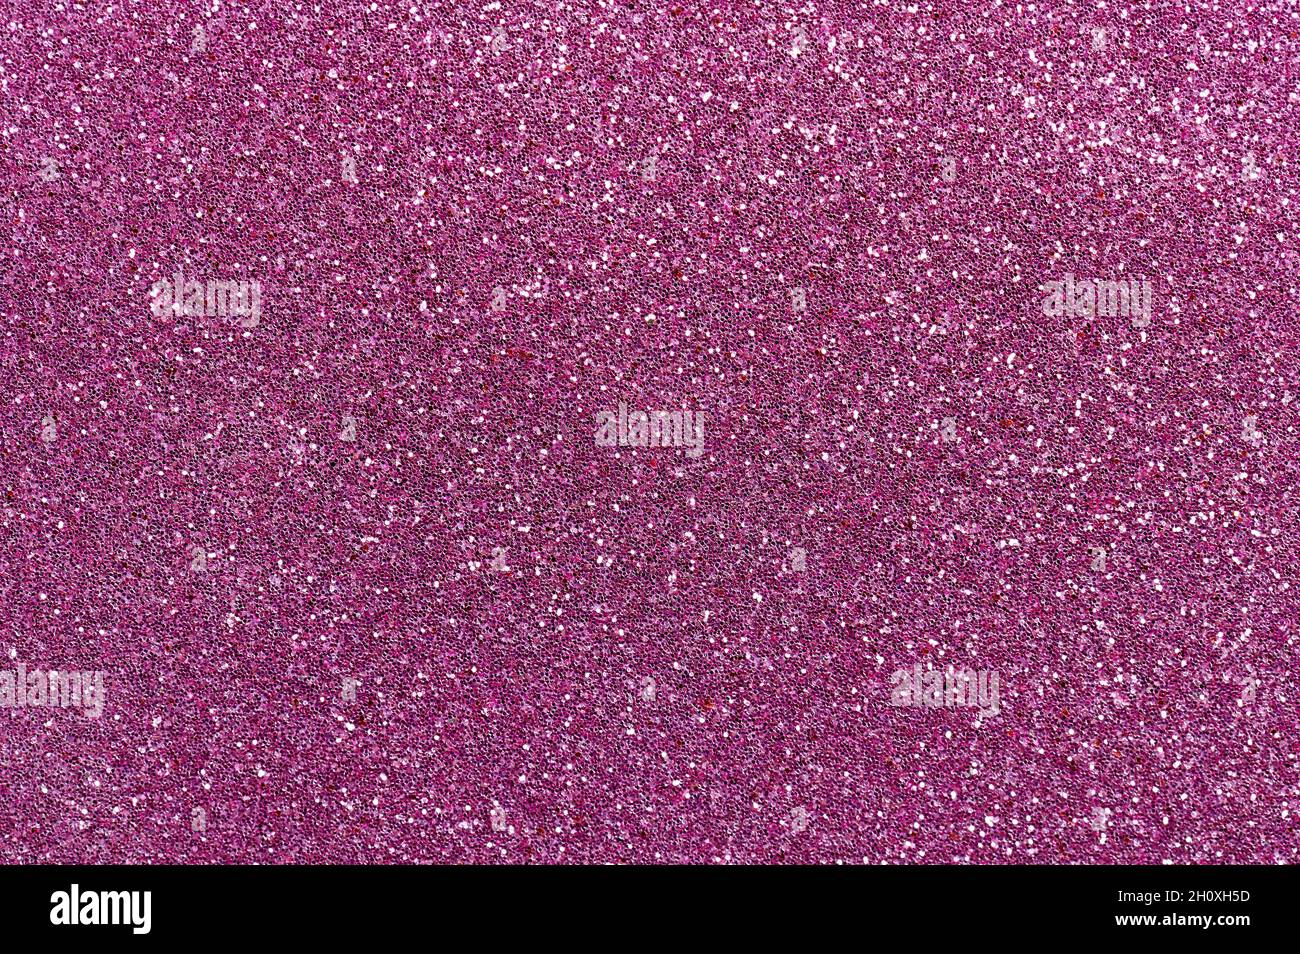 Pattern of purple glitter background macro close up view Stock Photo